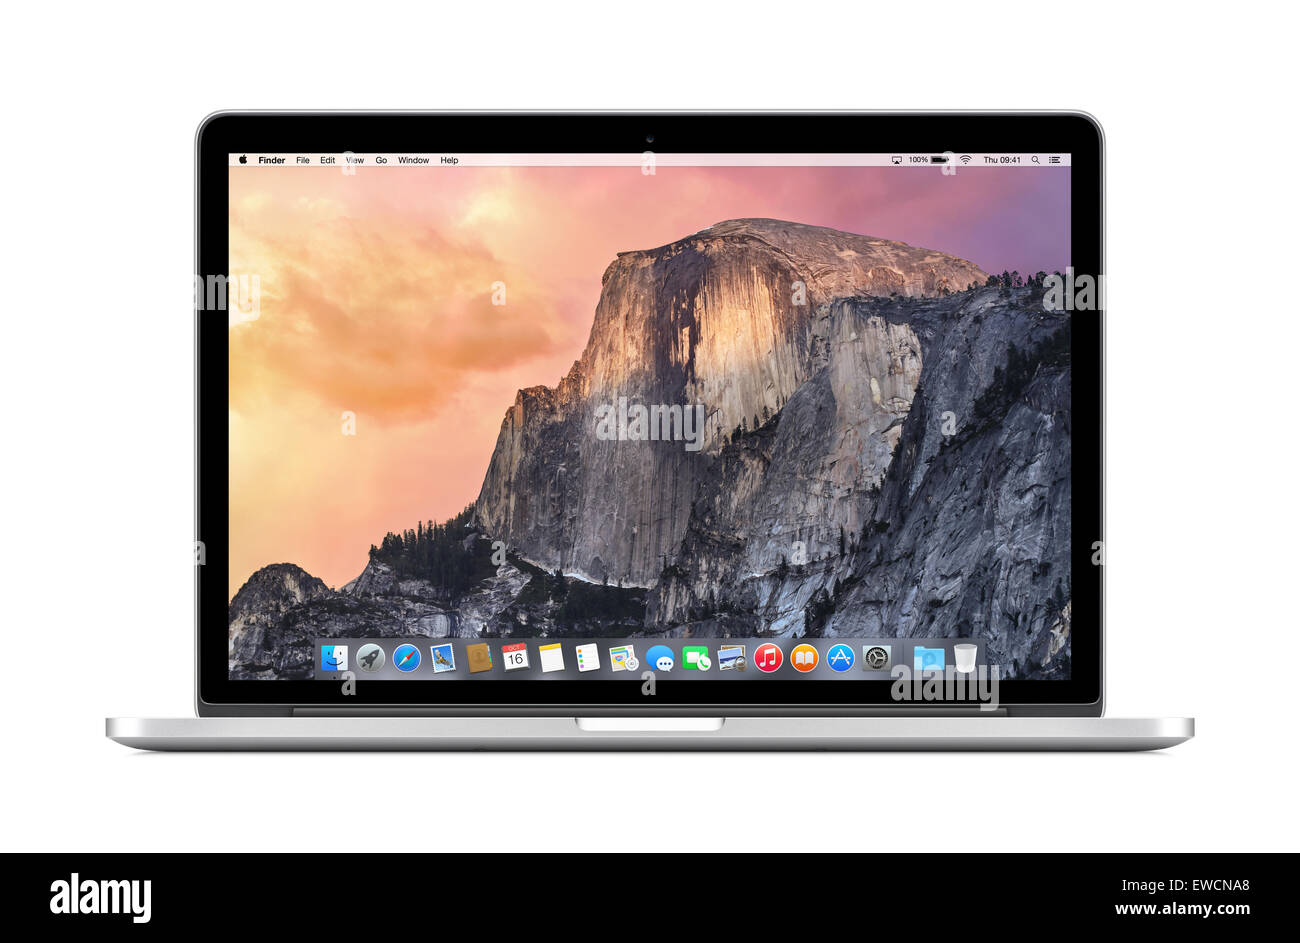 Varna, Bulgarien - 3. November 2013: Frontansicht direkt von Apple 15-Zoll MacBook Pro Retina mit OS X Yosemite auf dem Display. Stockfoto